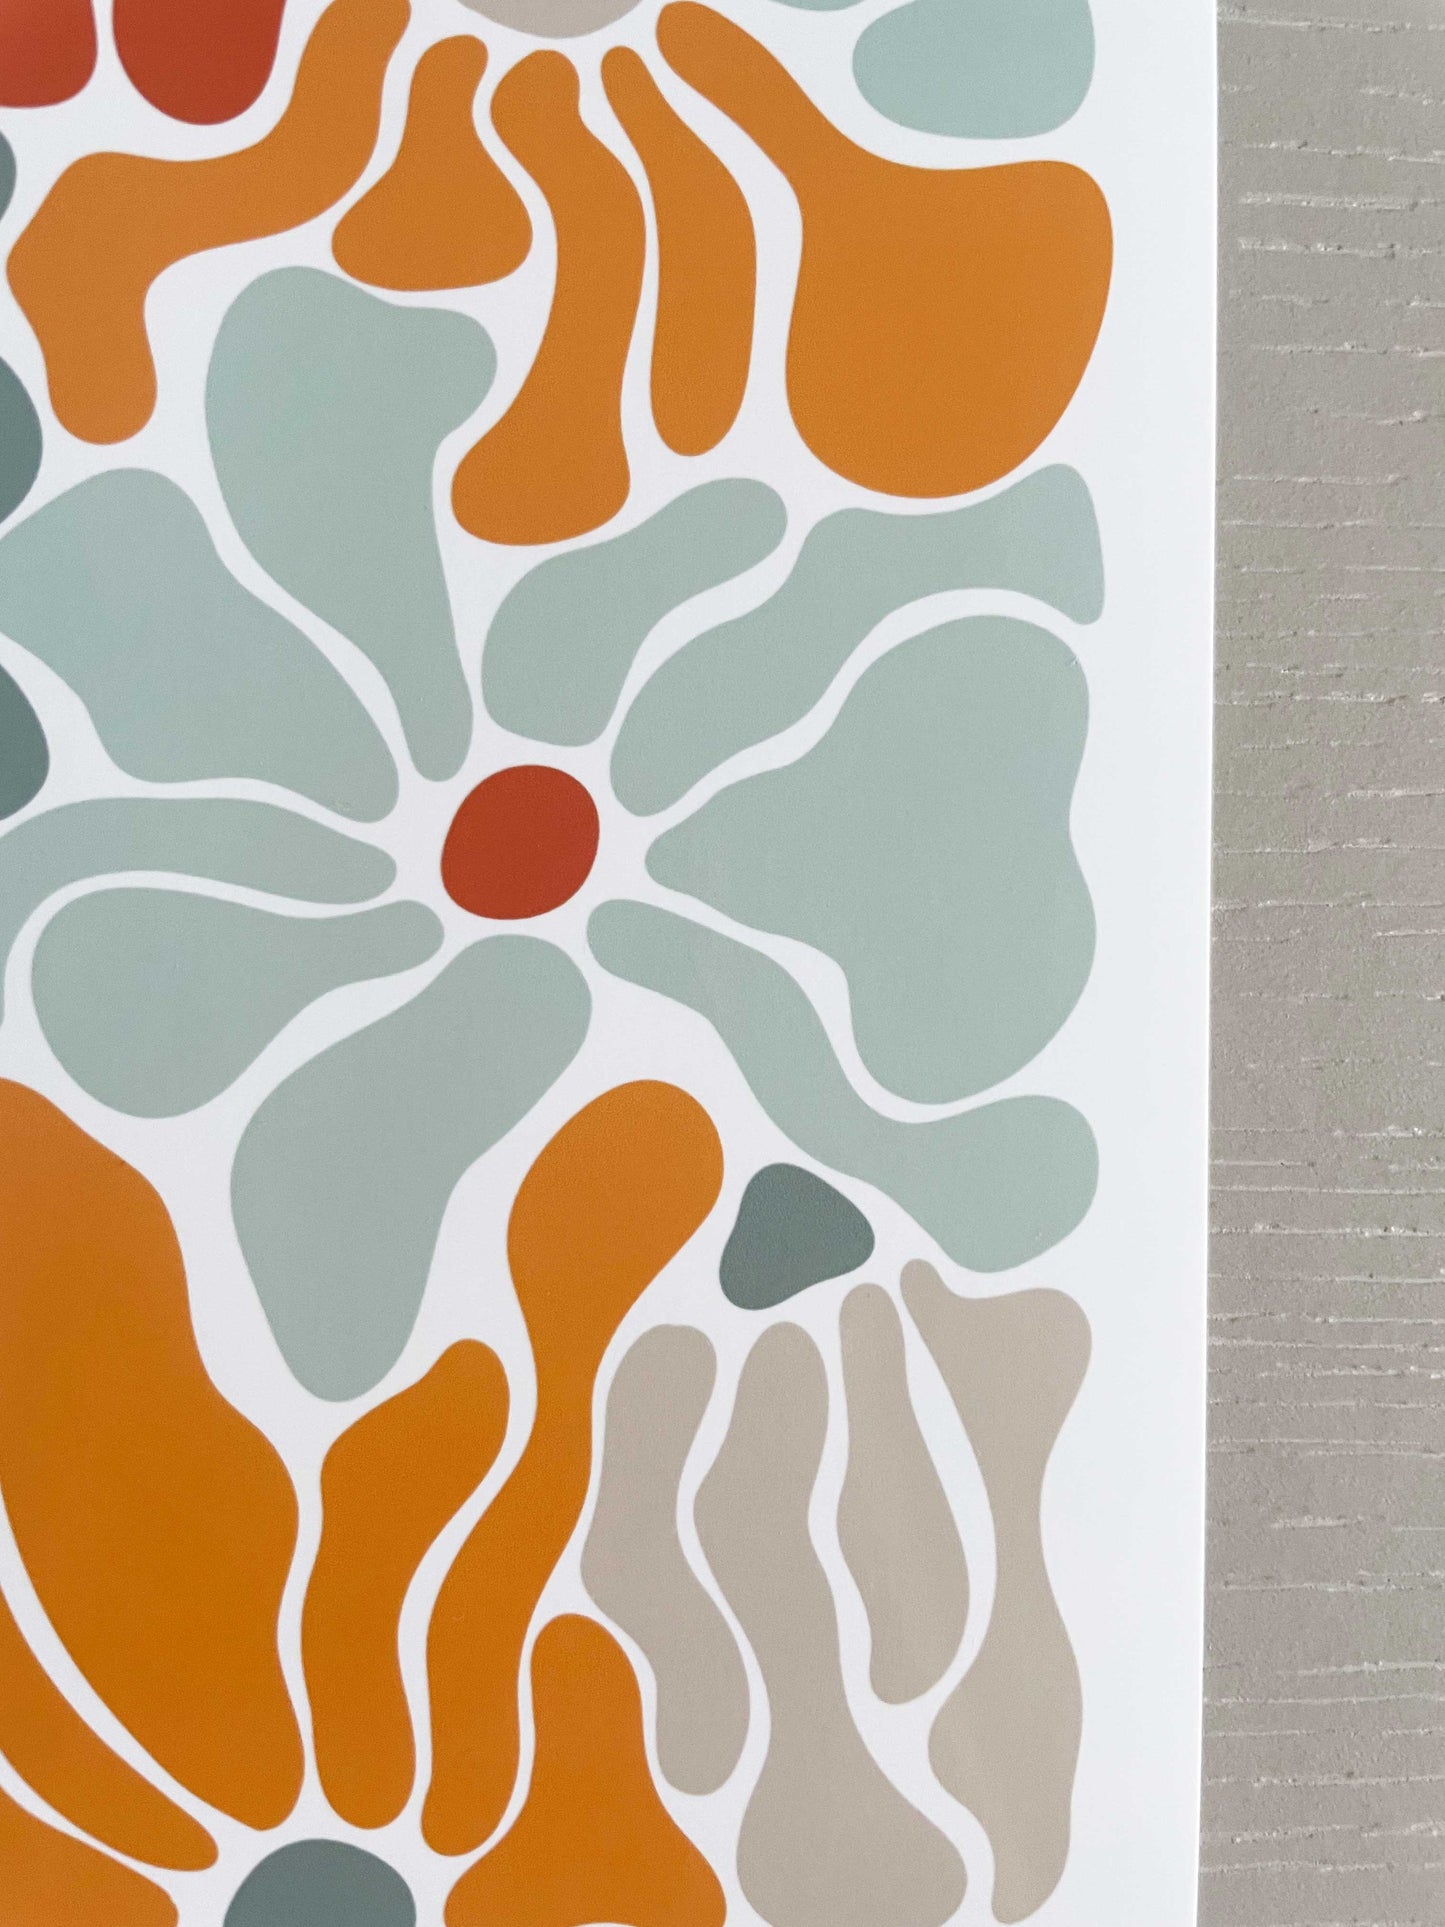 Matisse Retro Flower Power Abstract Summer Florals Print | Wavy Botanical Wall Art | Modern Flower Decor Gallery Poster